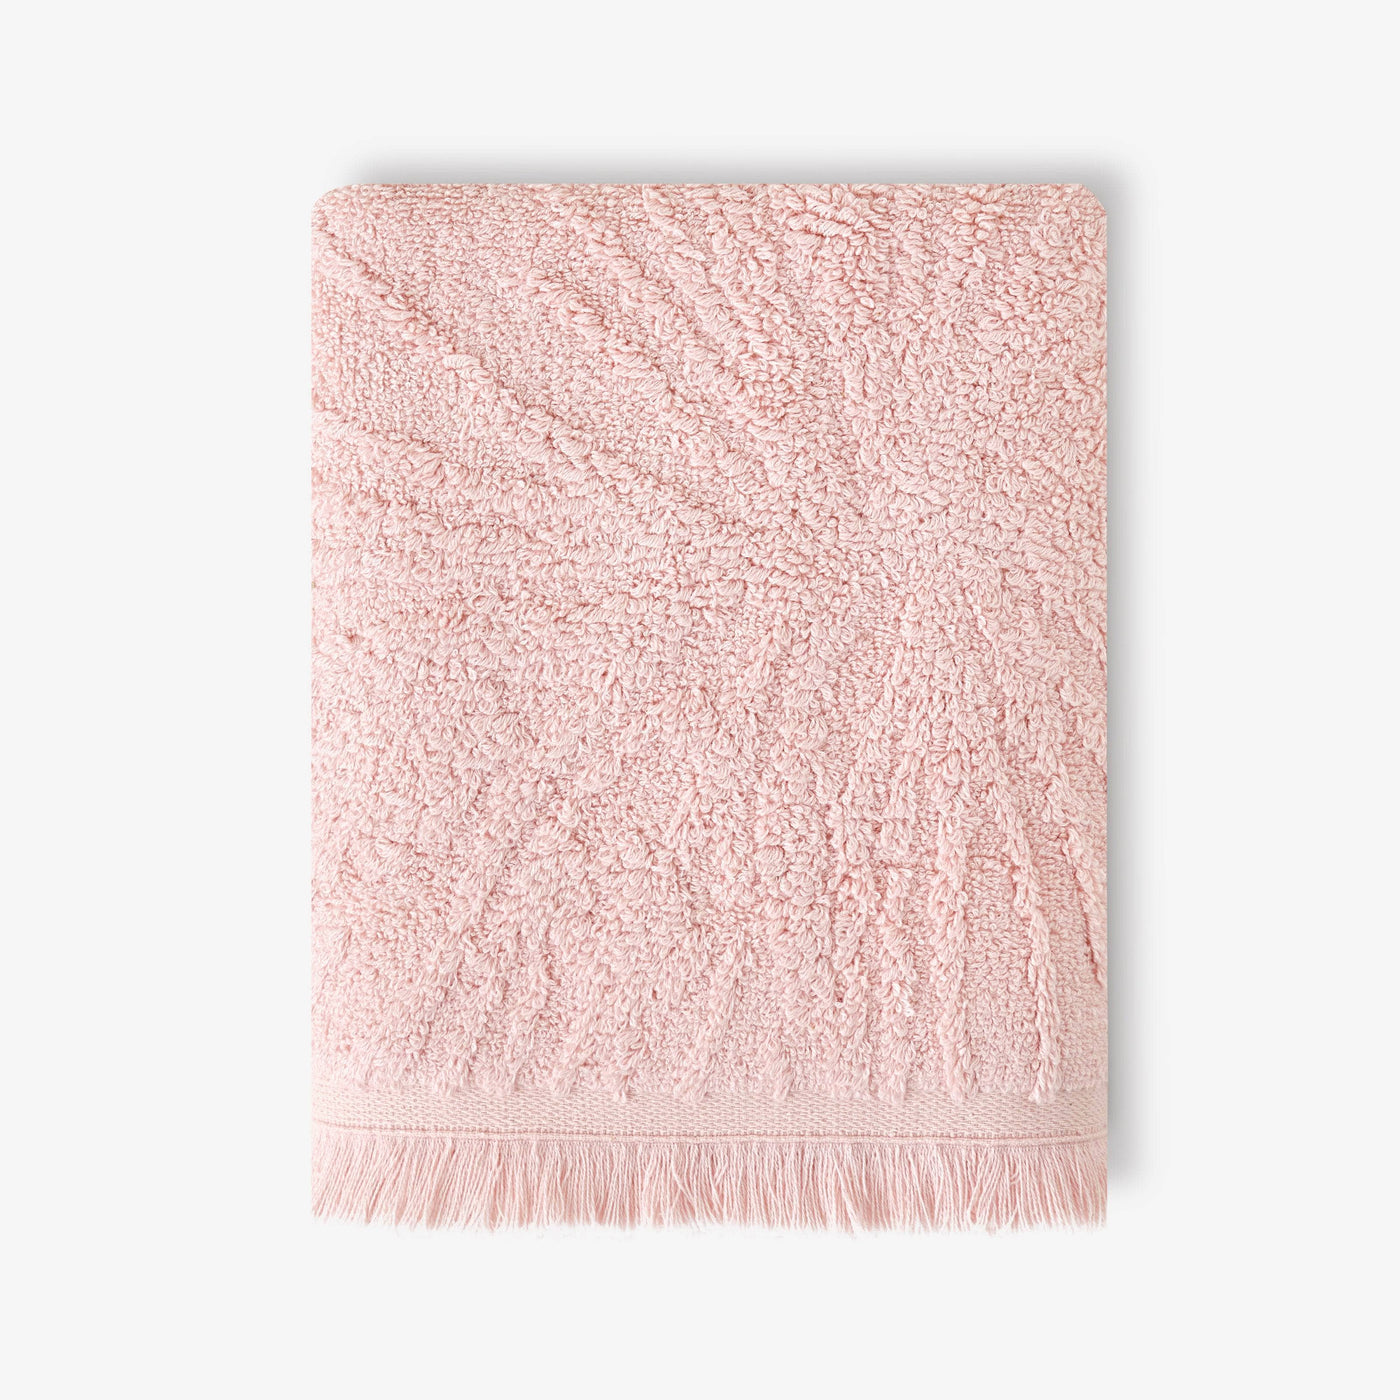 Barbara Jacquard Fringed 100% Turkish Cotton Hand Towel, Pink 1